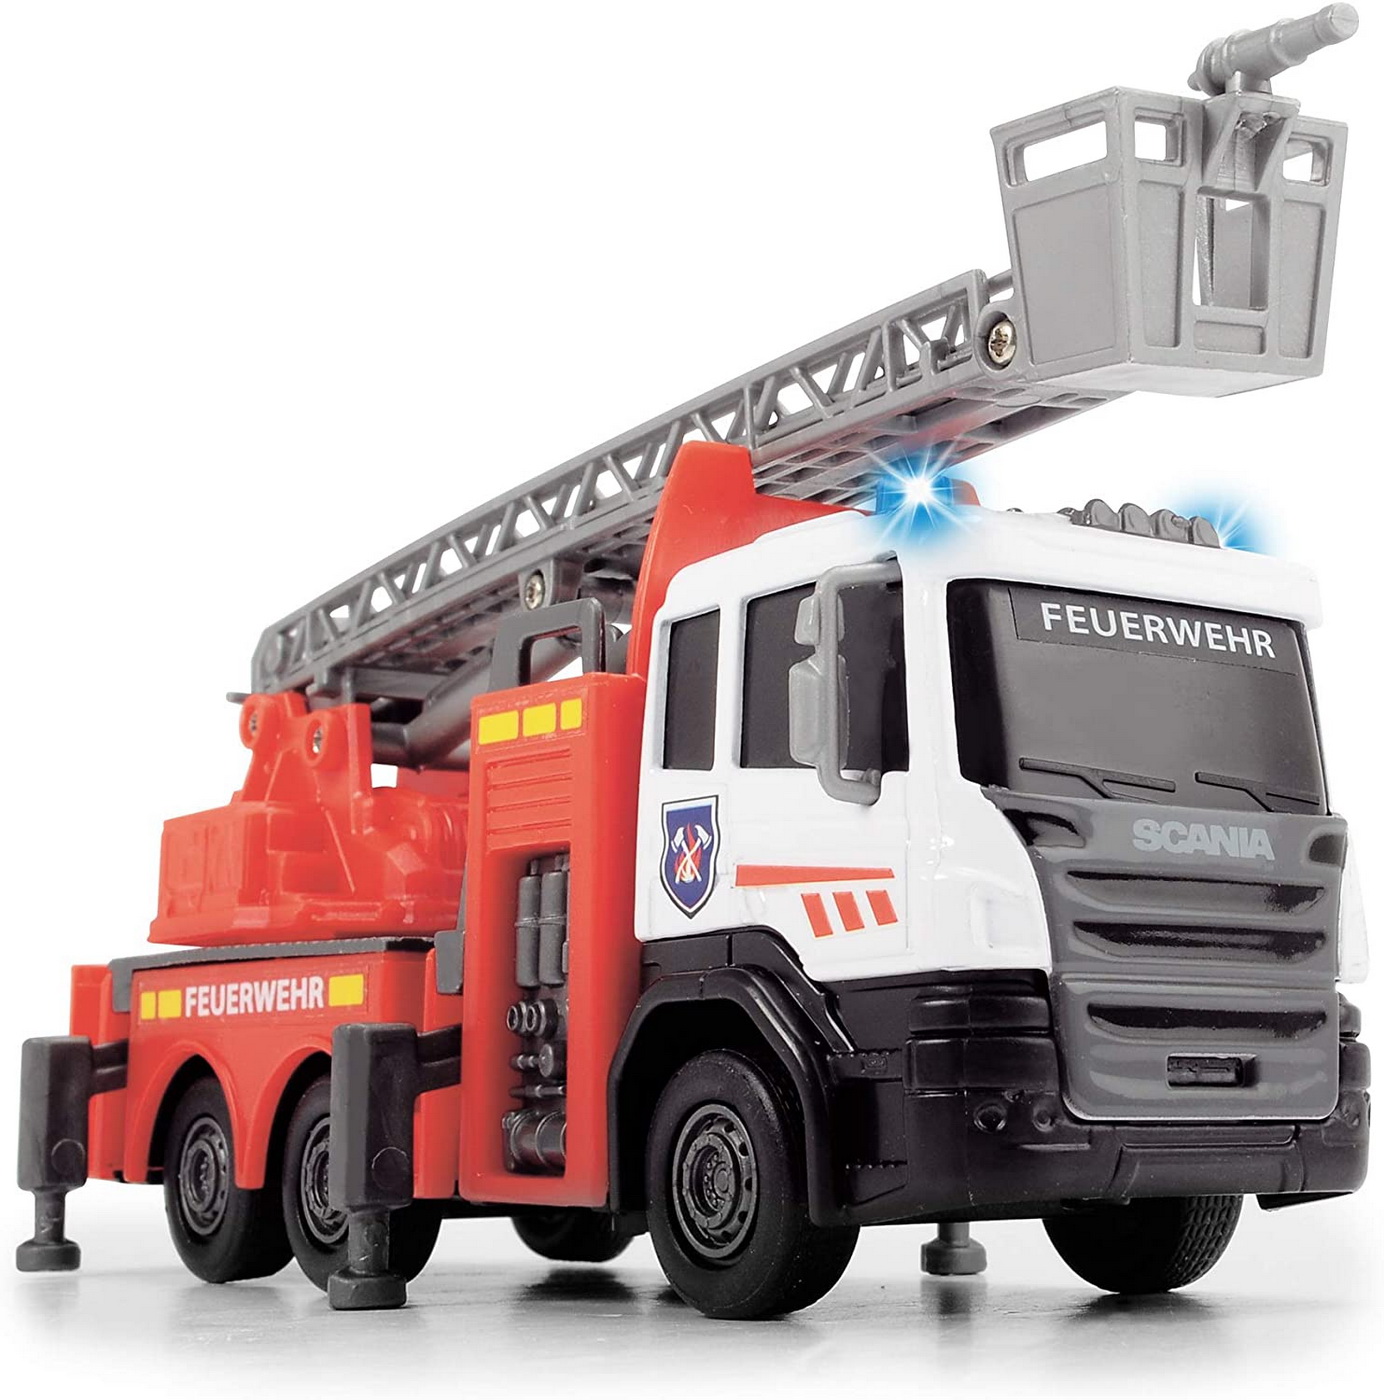 Masinuta - Scania Fire Rescue, cu tun cu apa | Dickie Toys - 2